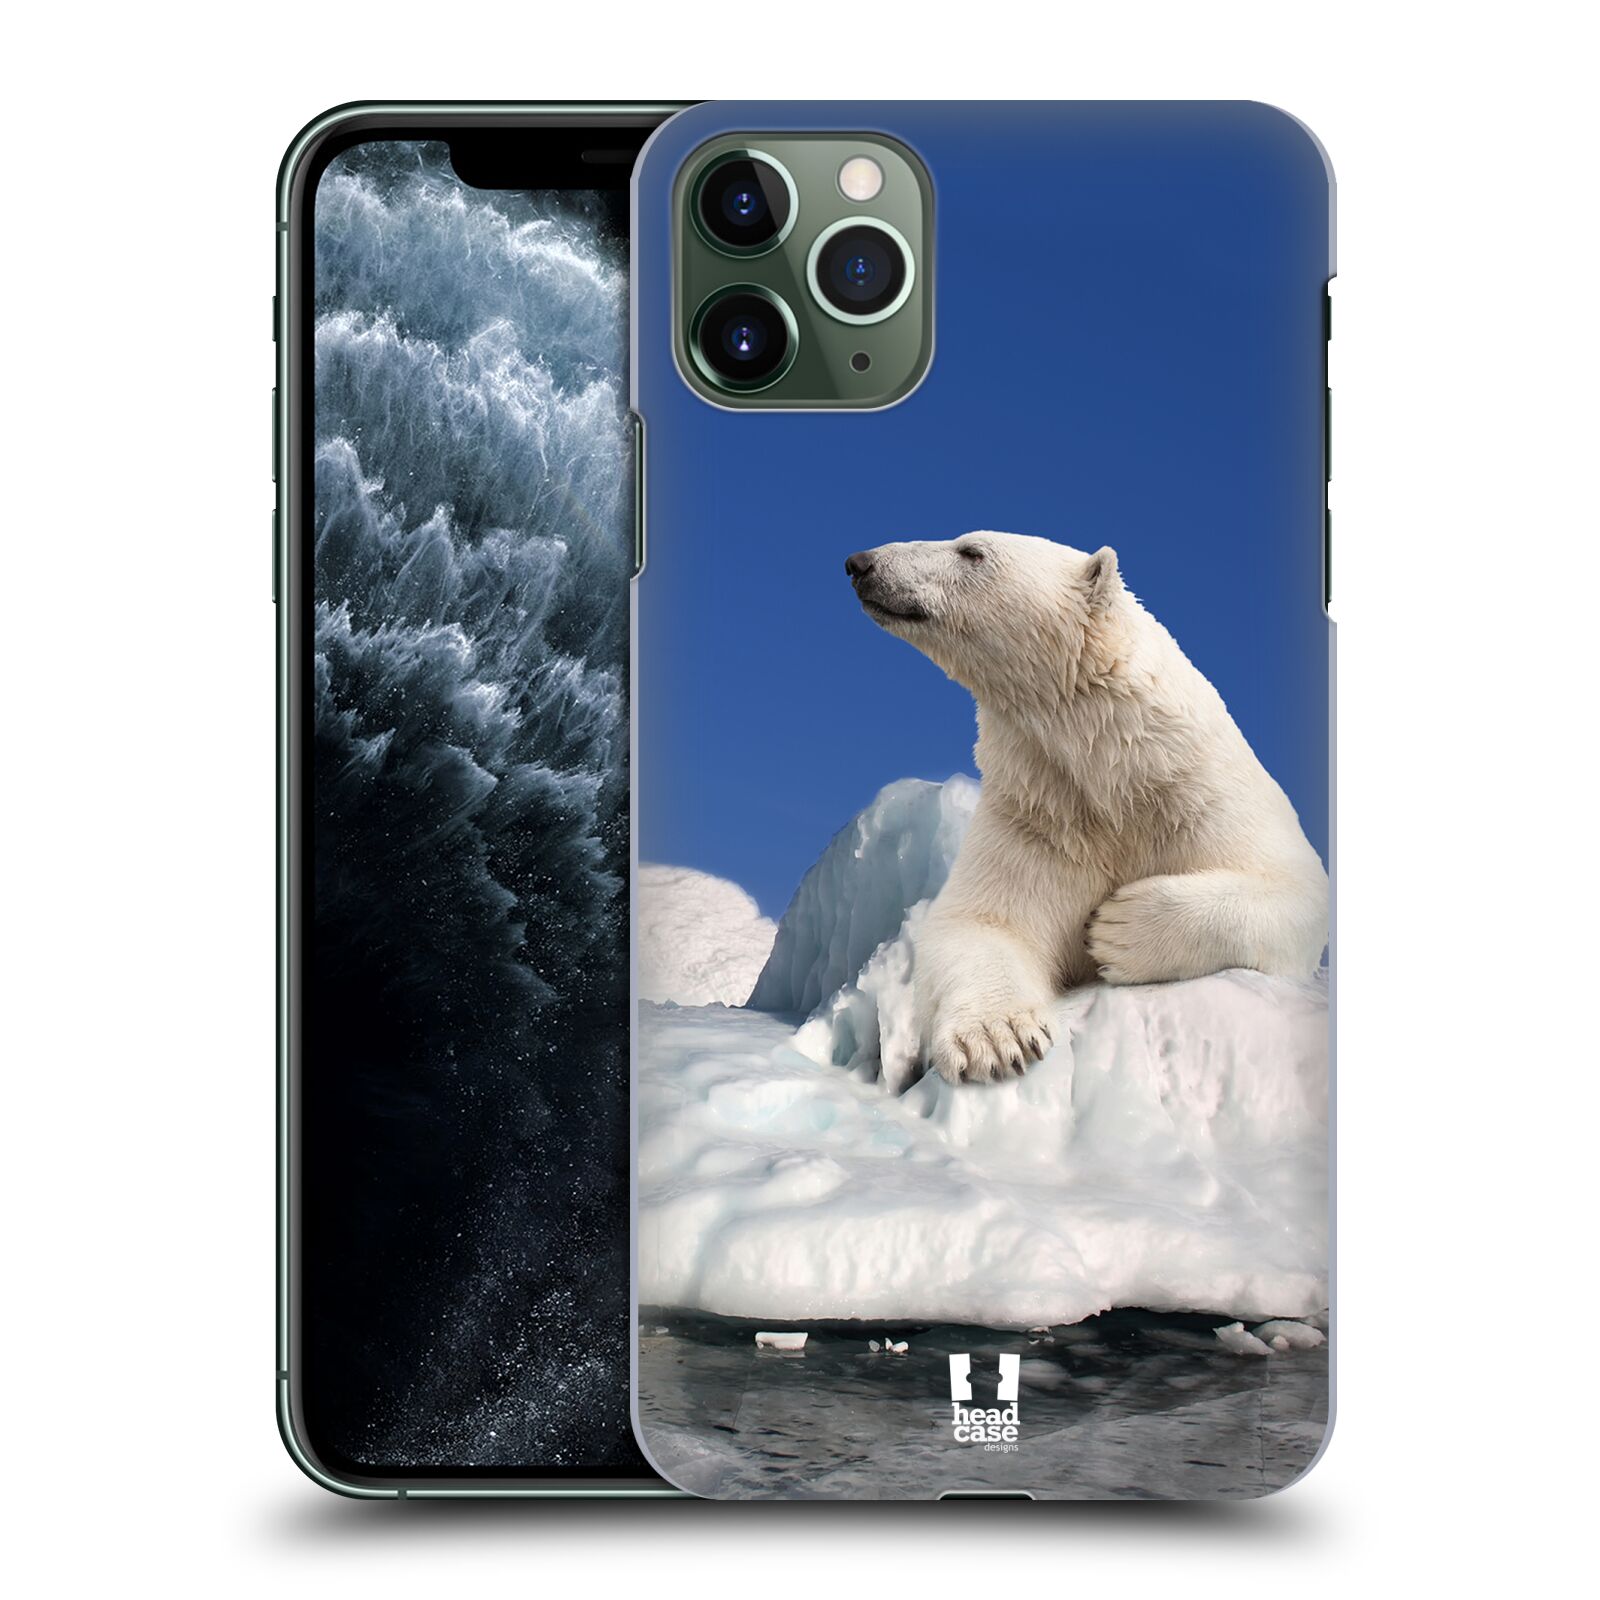 Pouzdro na mobil Apple Iphone 11 PRO MAX - HEAD CASE - vzor Divočina, Divoký život a zvířata foto LEDNÍ MEDVĚD NA LEDOVCI A NEBE MODRÁ